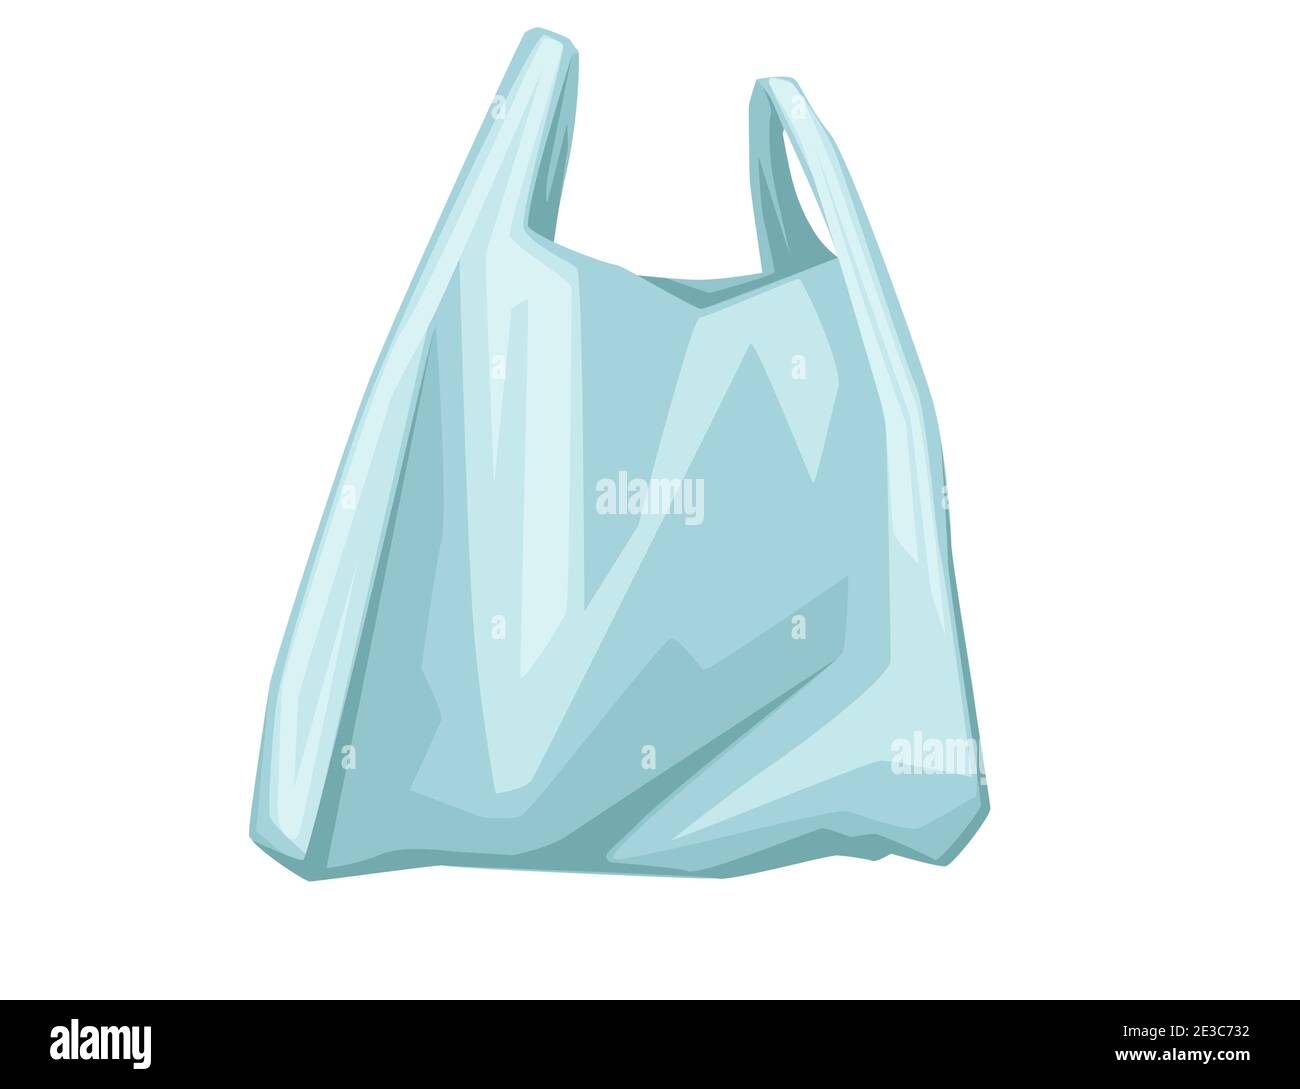 Sac plastique bleu utilisé sac jetable pour les ordures ou les achats  illustration vectorielle sur fond blanc Image Vectorielle Stock - Alamy